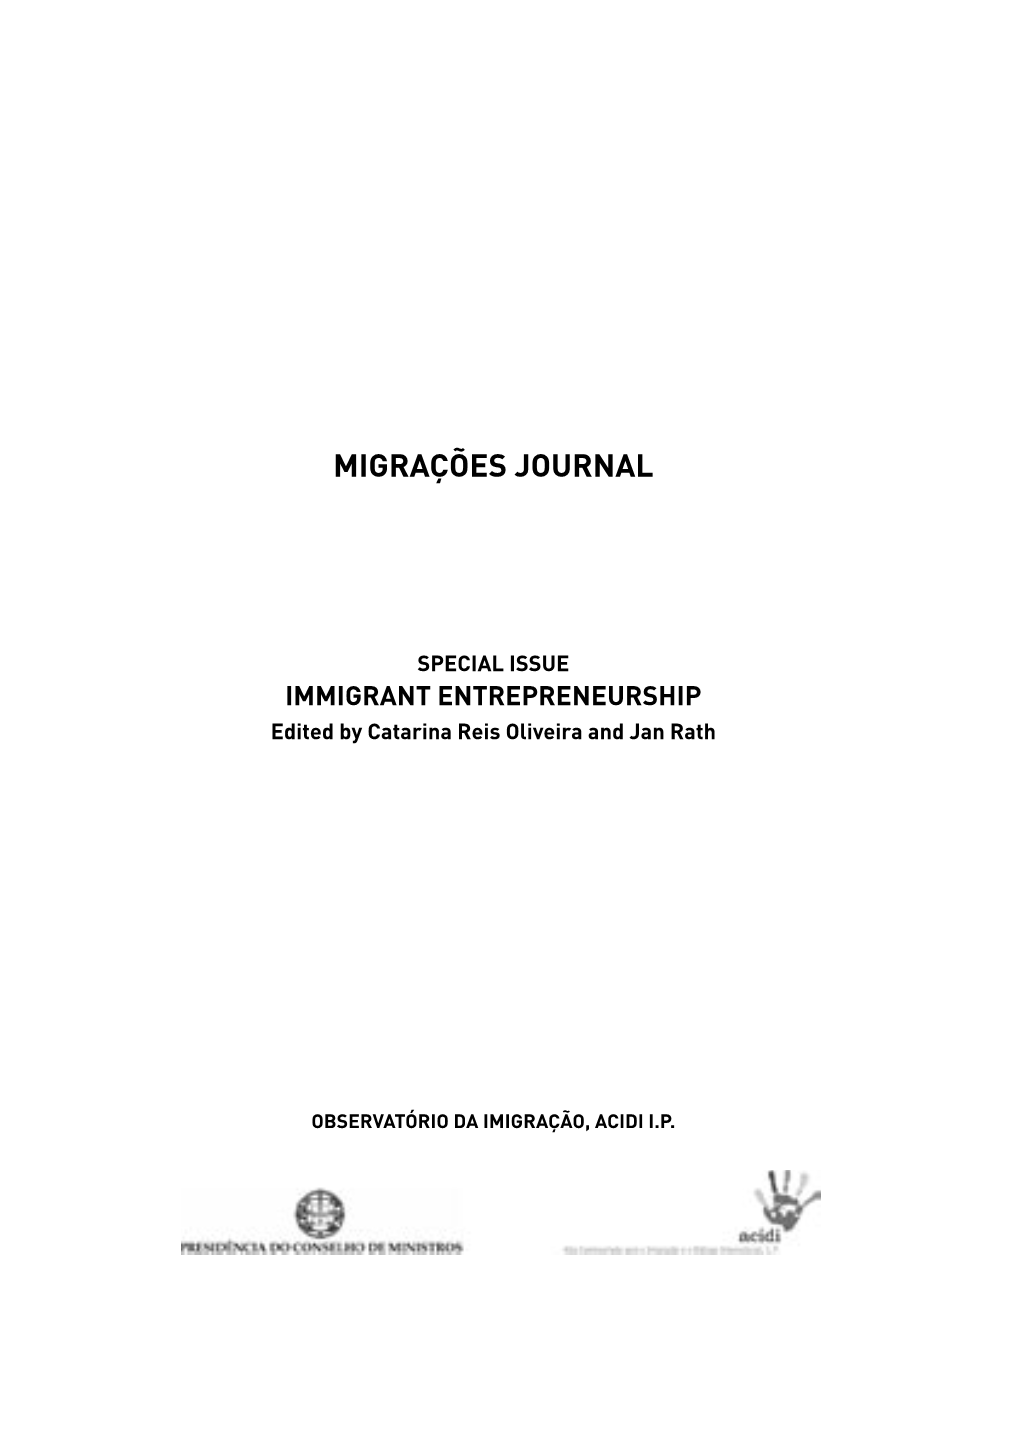 Migrações Journal